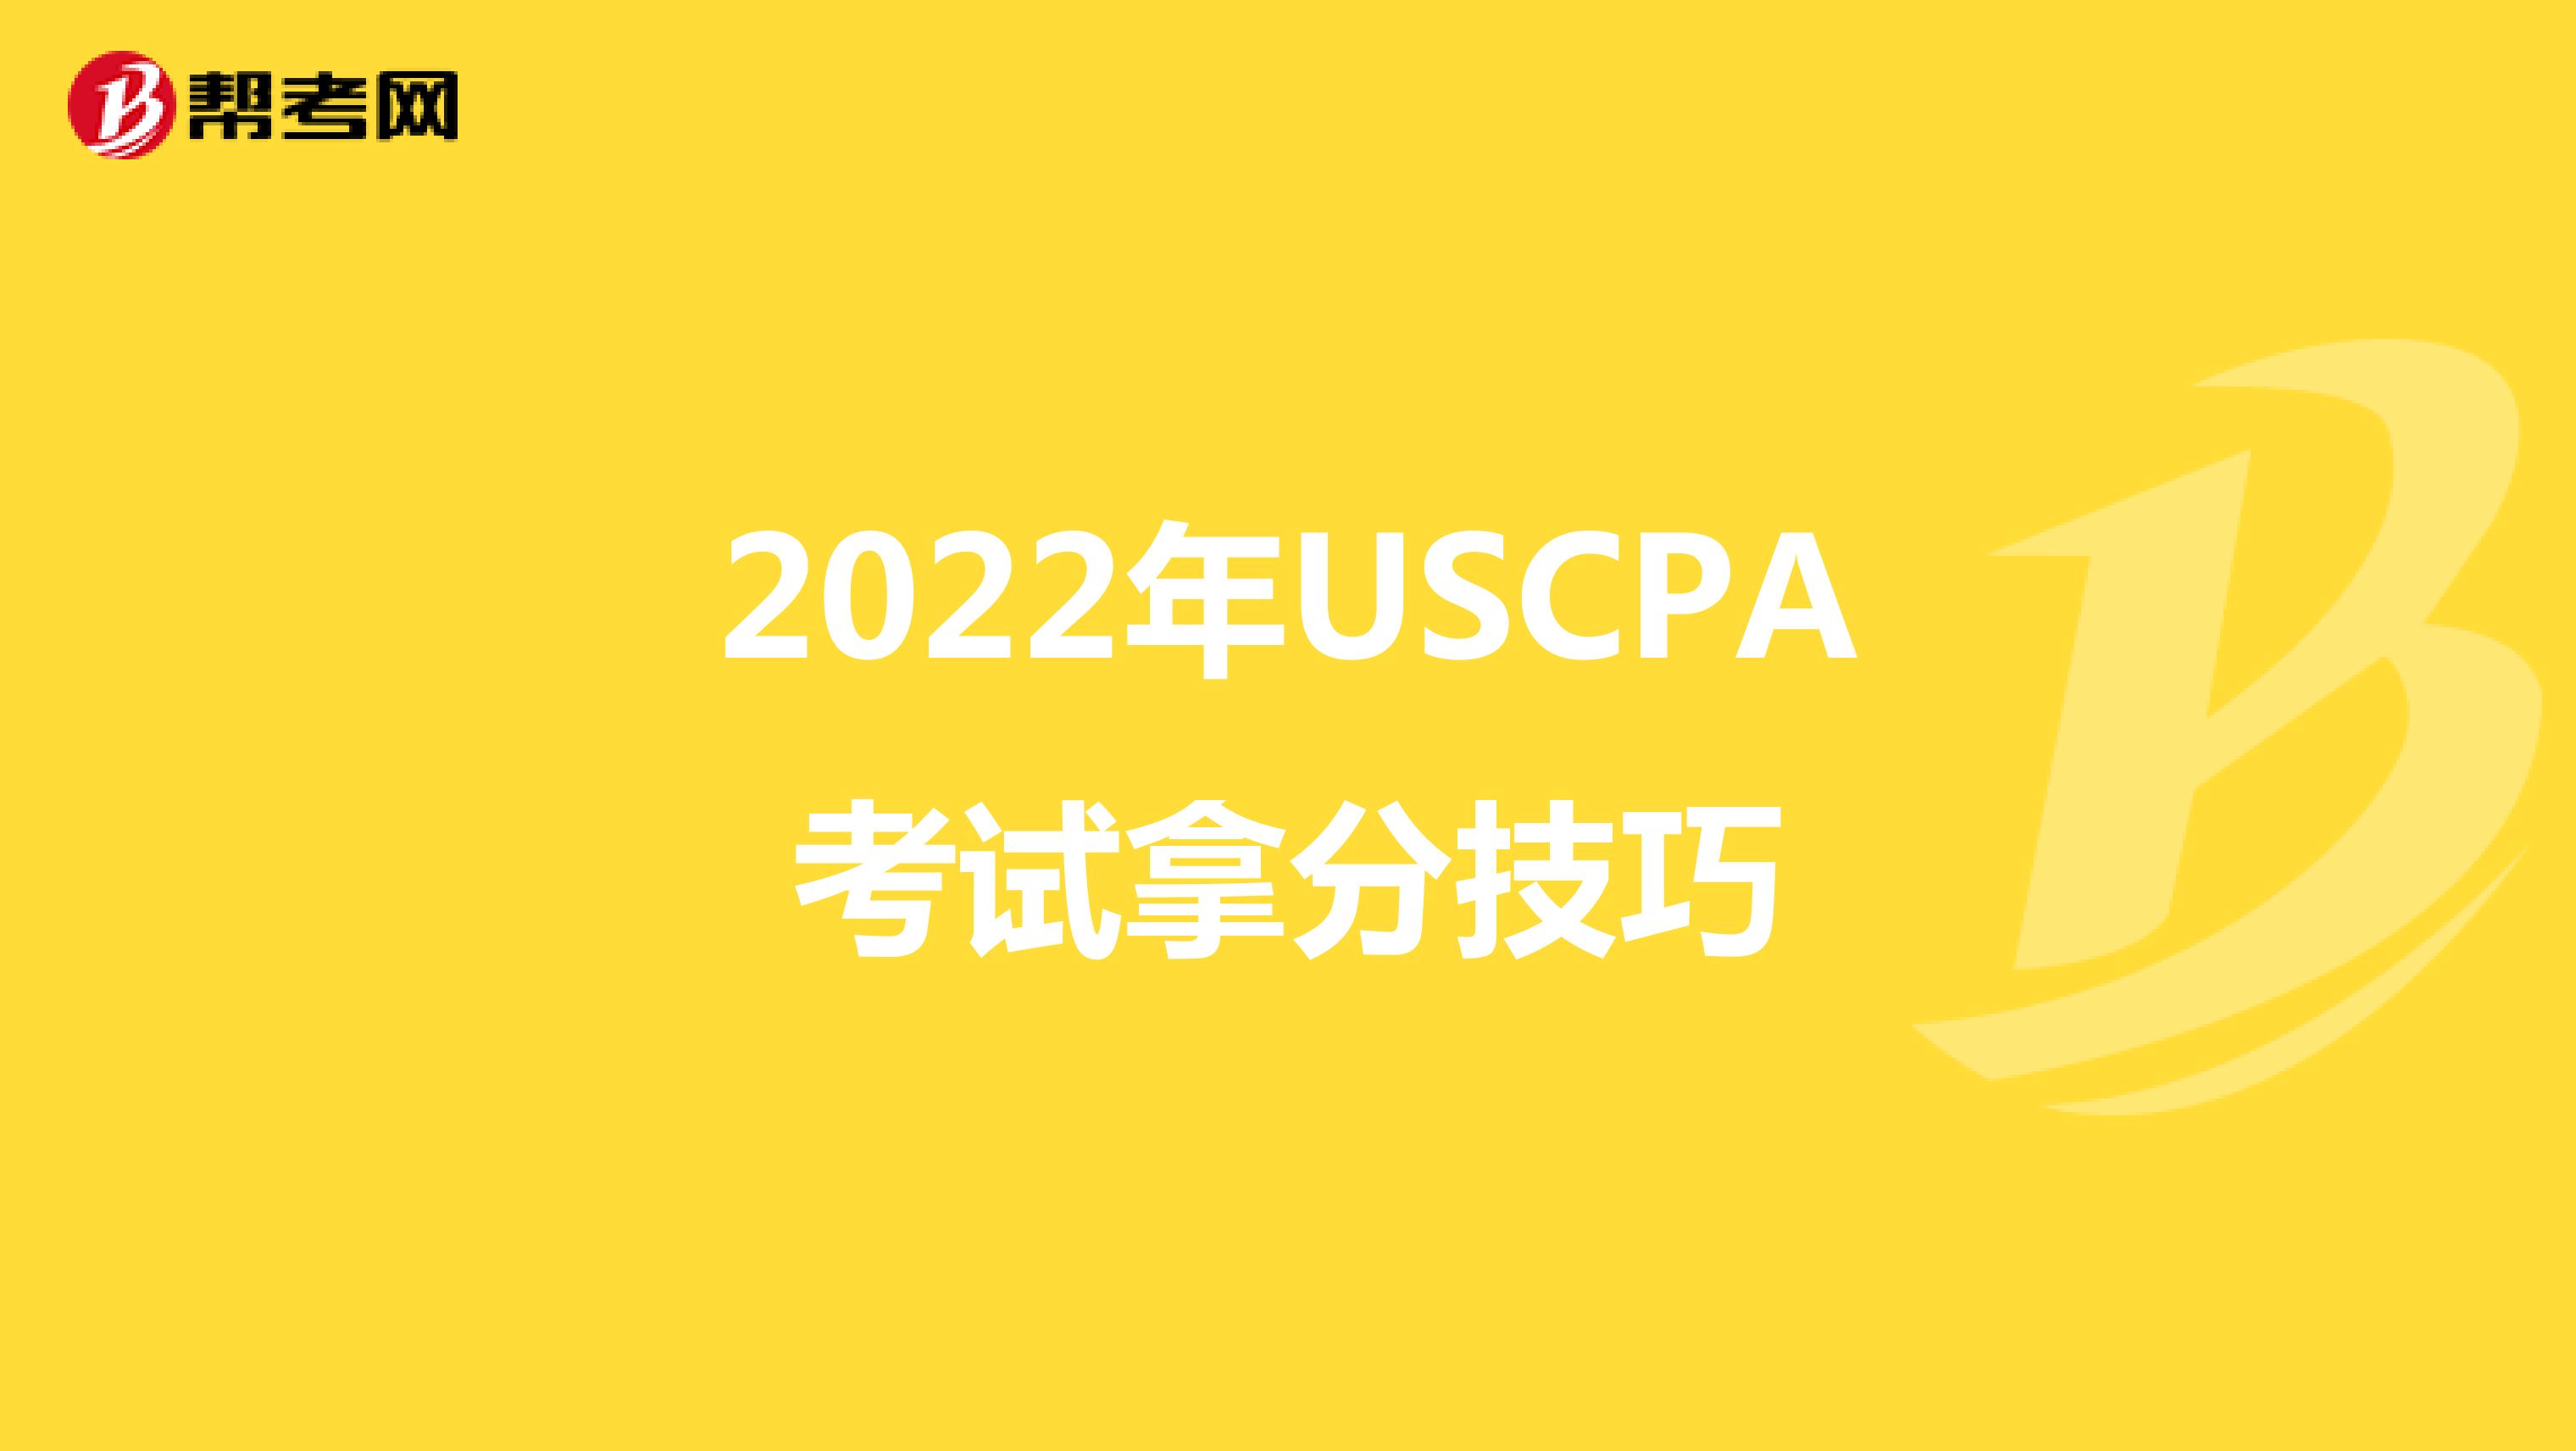 2022年USCPA考试拿分技巧